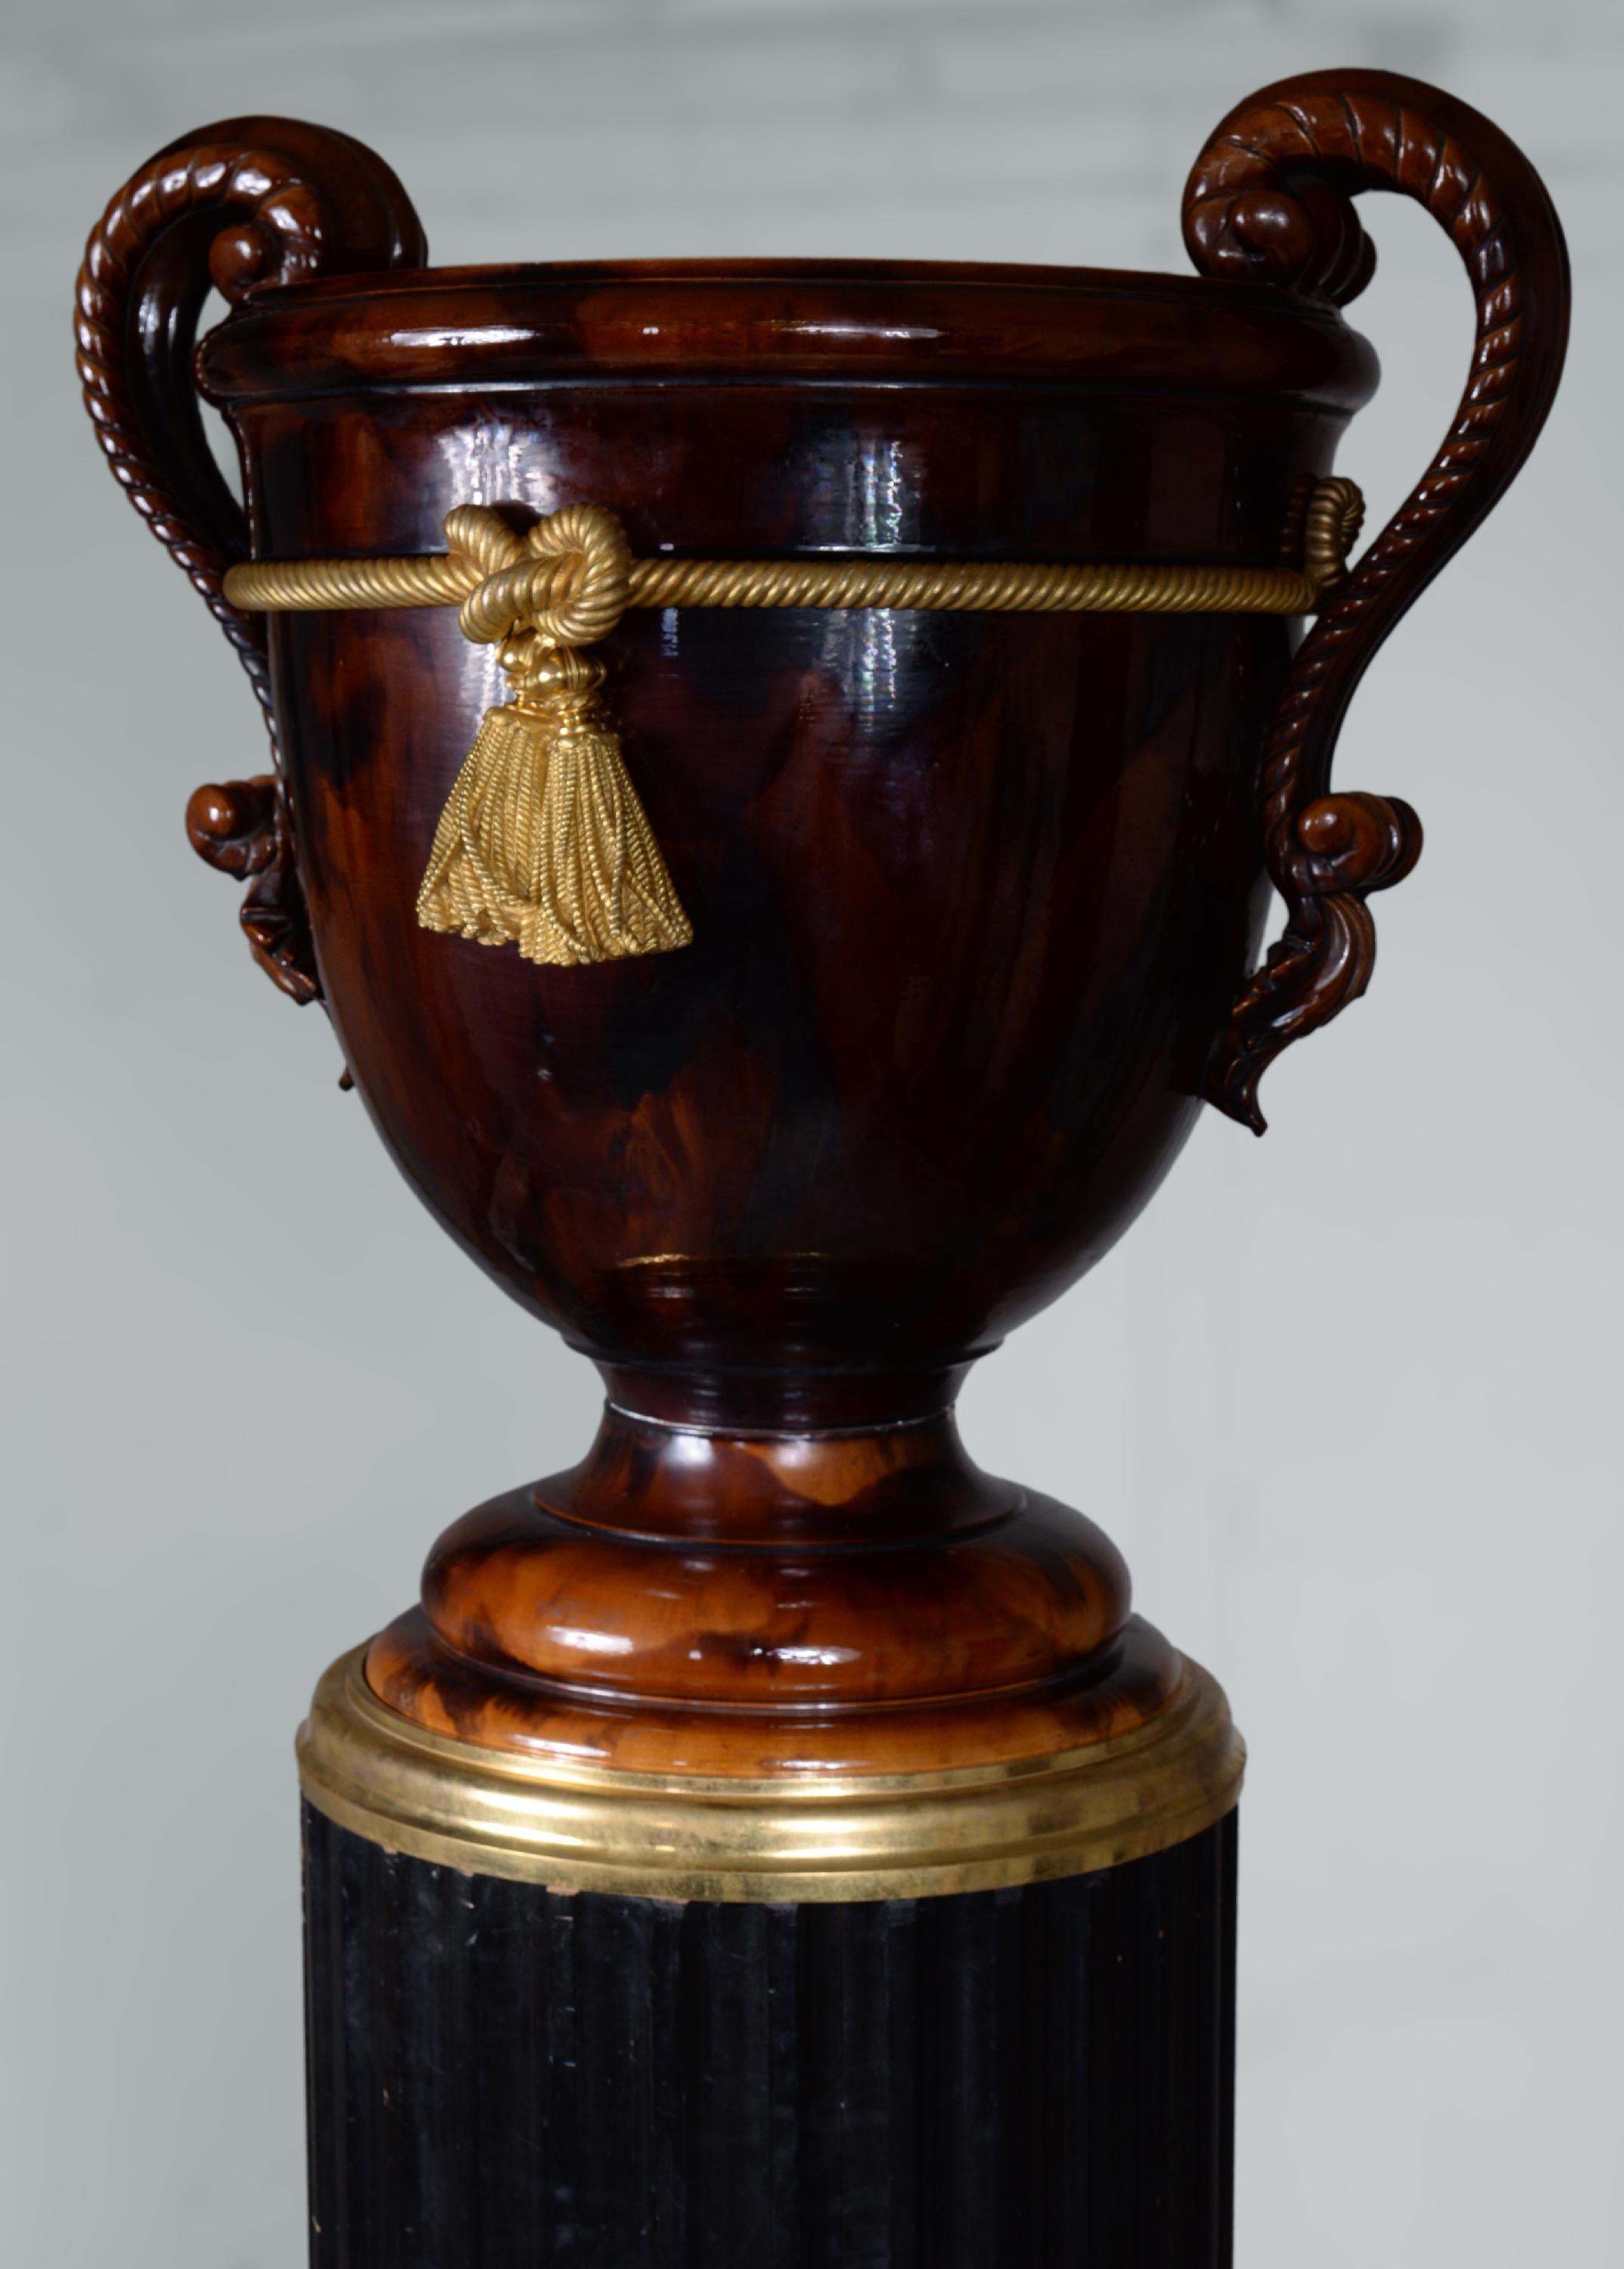 Diese monumentale Vase im Stil Napoleons III. wurde aus Keramik, Bronze und geschwärztem Holz gefertigt. Eine große Säule aus schwarzem Birnbaumholz in dorischer Anordnung trägt eine prächtige Vase mit eleganten Kurven. Der Bronzesockel fügt sich in